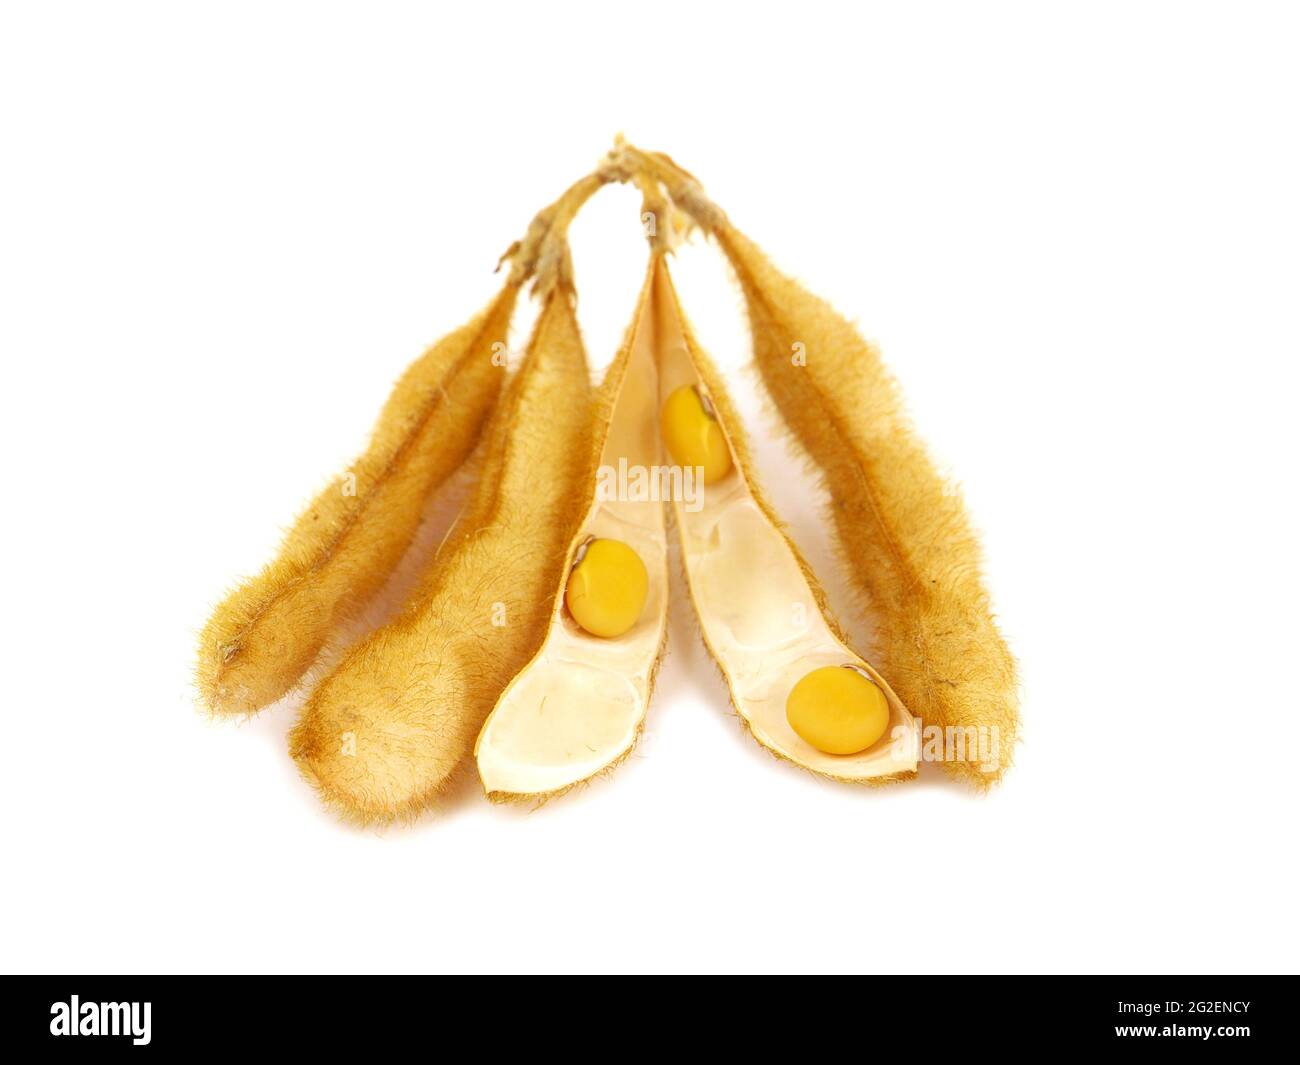 Gousse de soja et graines isolées sur blanc, Glycine max Banque D'Images